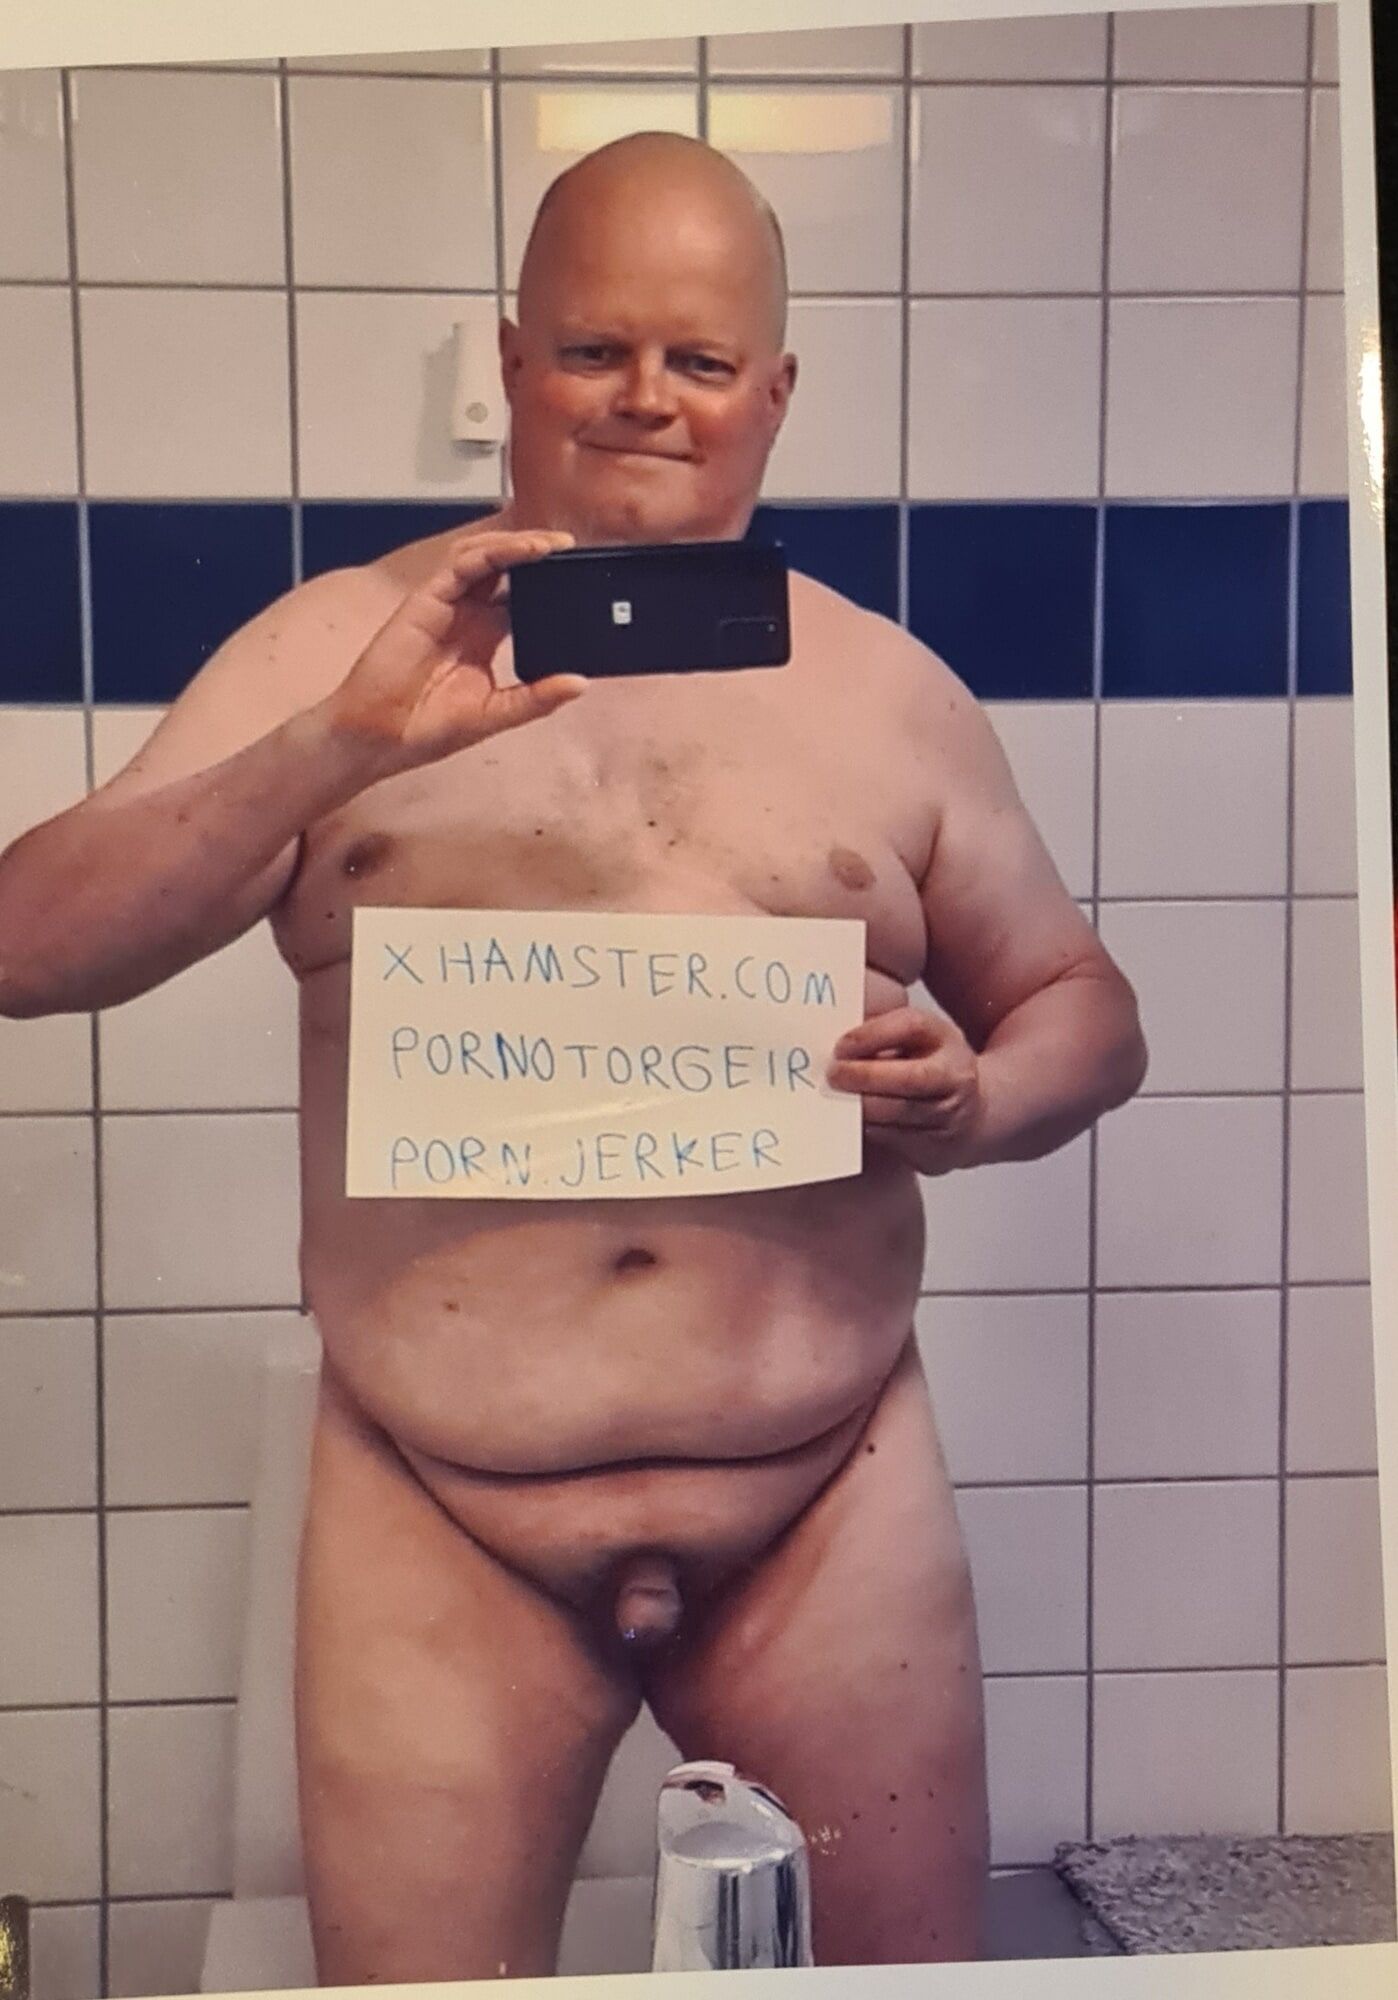 PornoTorgeir Nude Pics.